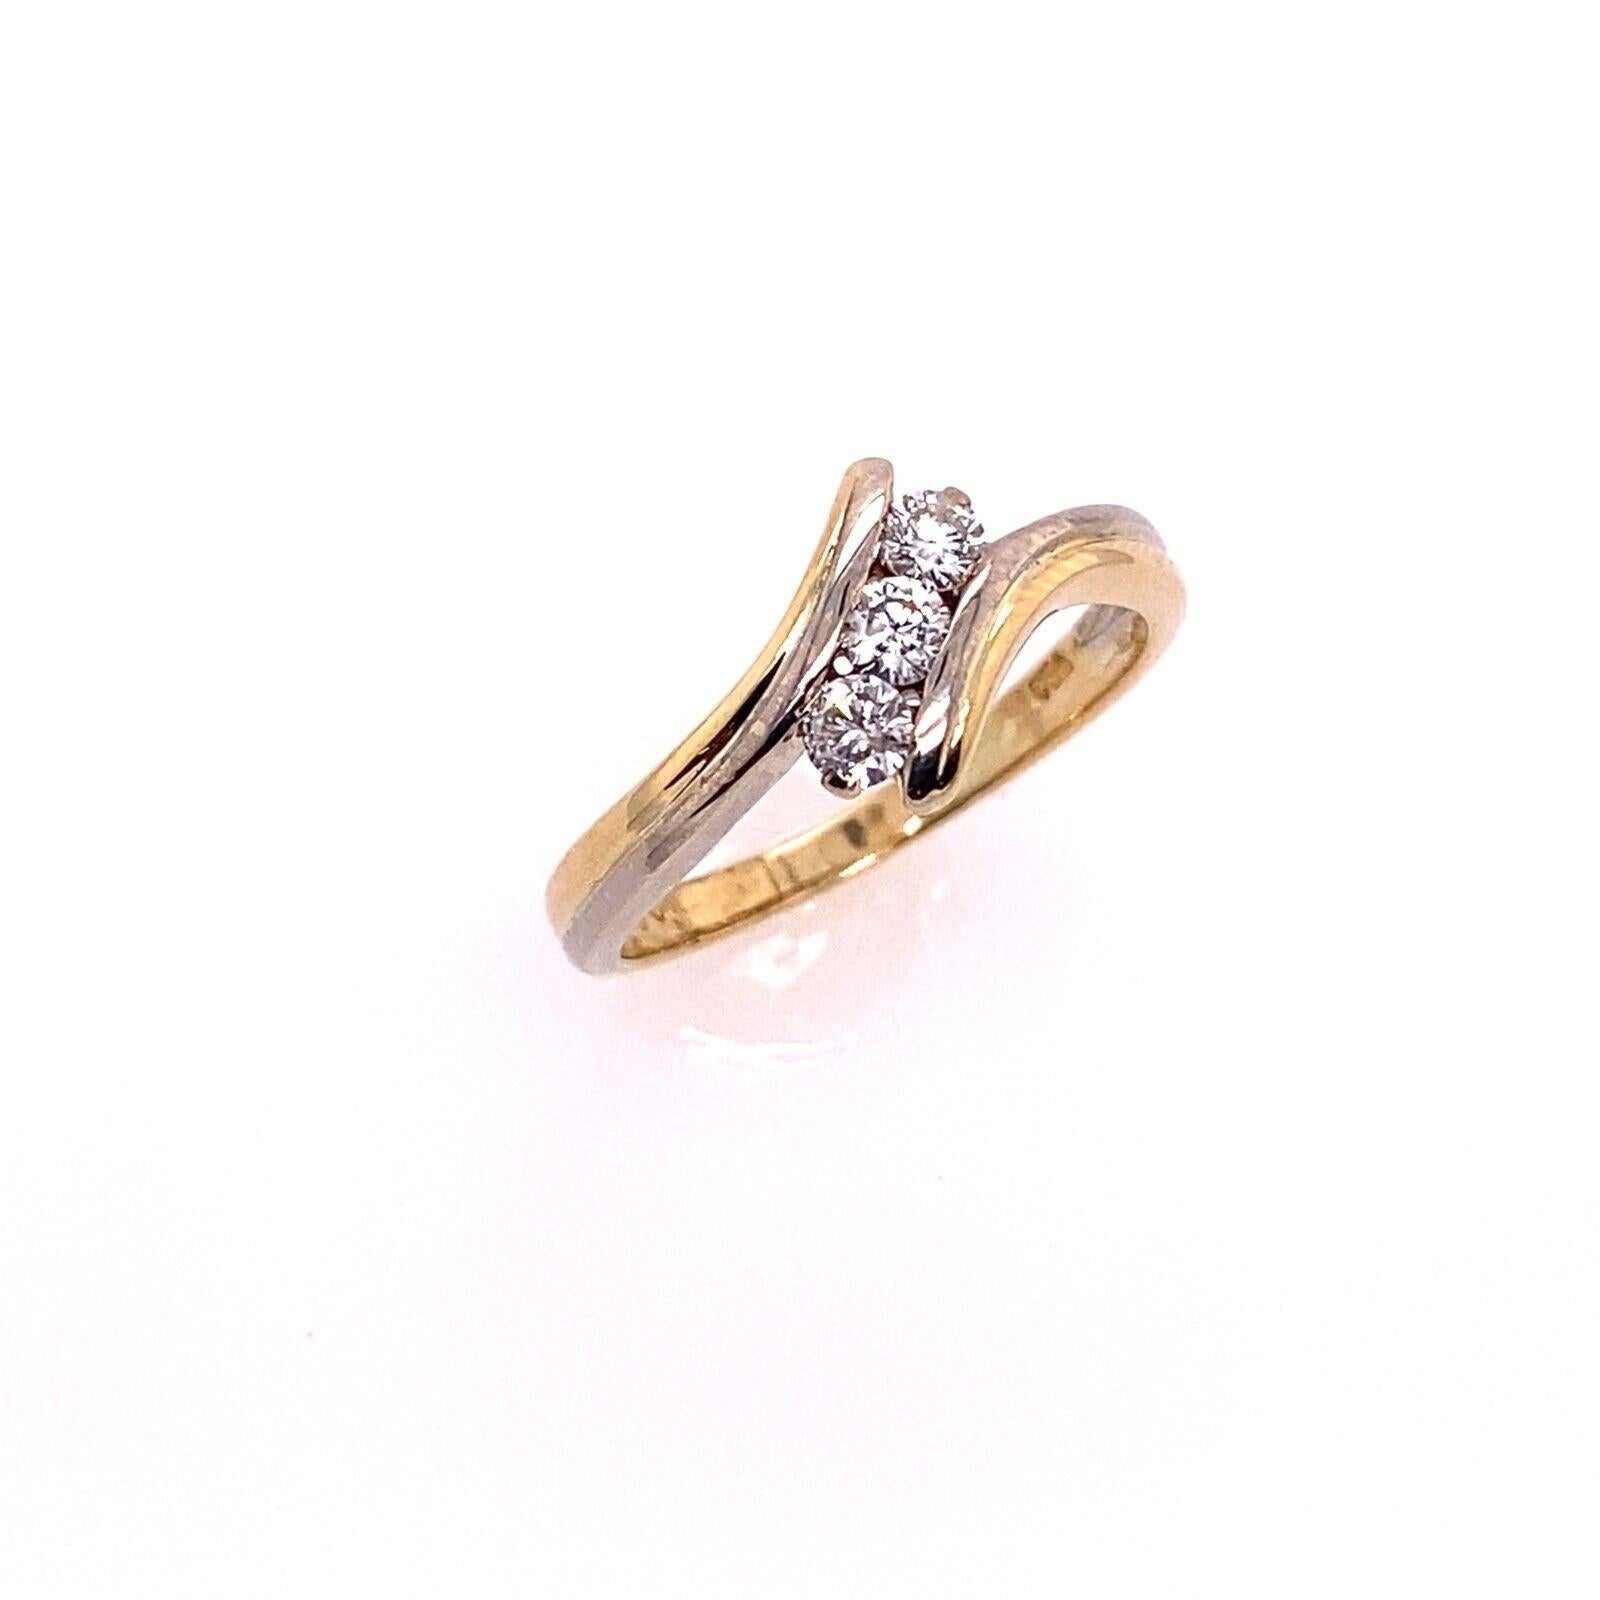 Dieser elegante Crossover-Ring mit 3 Steinen ist in 18-karätigem Gelbgold gefasst und hat insgesamt 0,25ct Diamanten.

Zusätzliche Informationen:
Gesamtgewicht der Diamanten: 0,25ct
Farbe des Diamanten: G/H
Diamant Reinheit: Si2
Breite des Bandes: 2